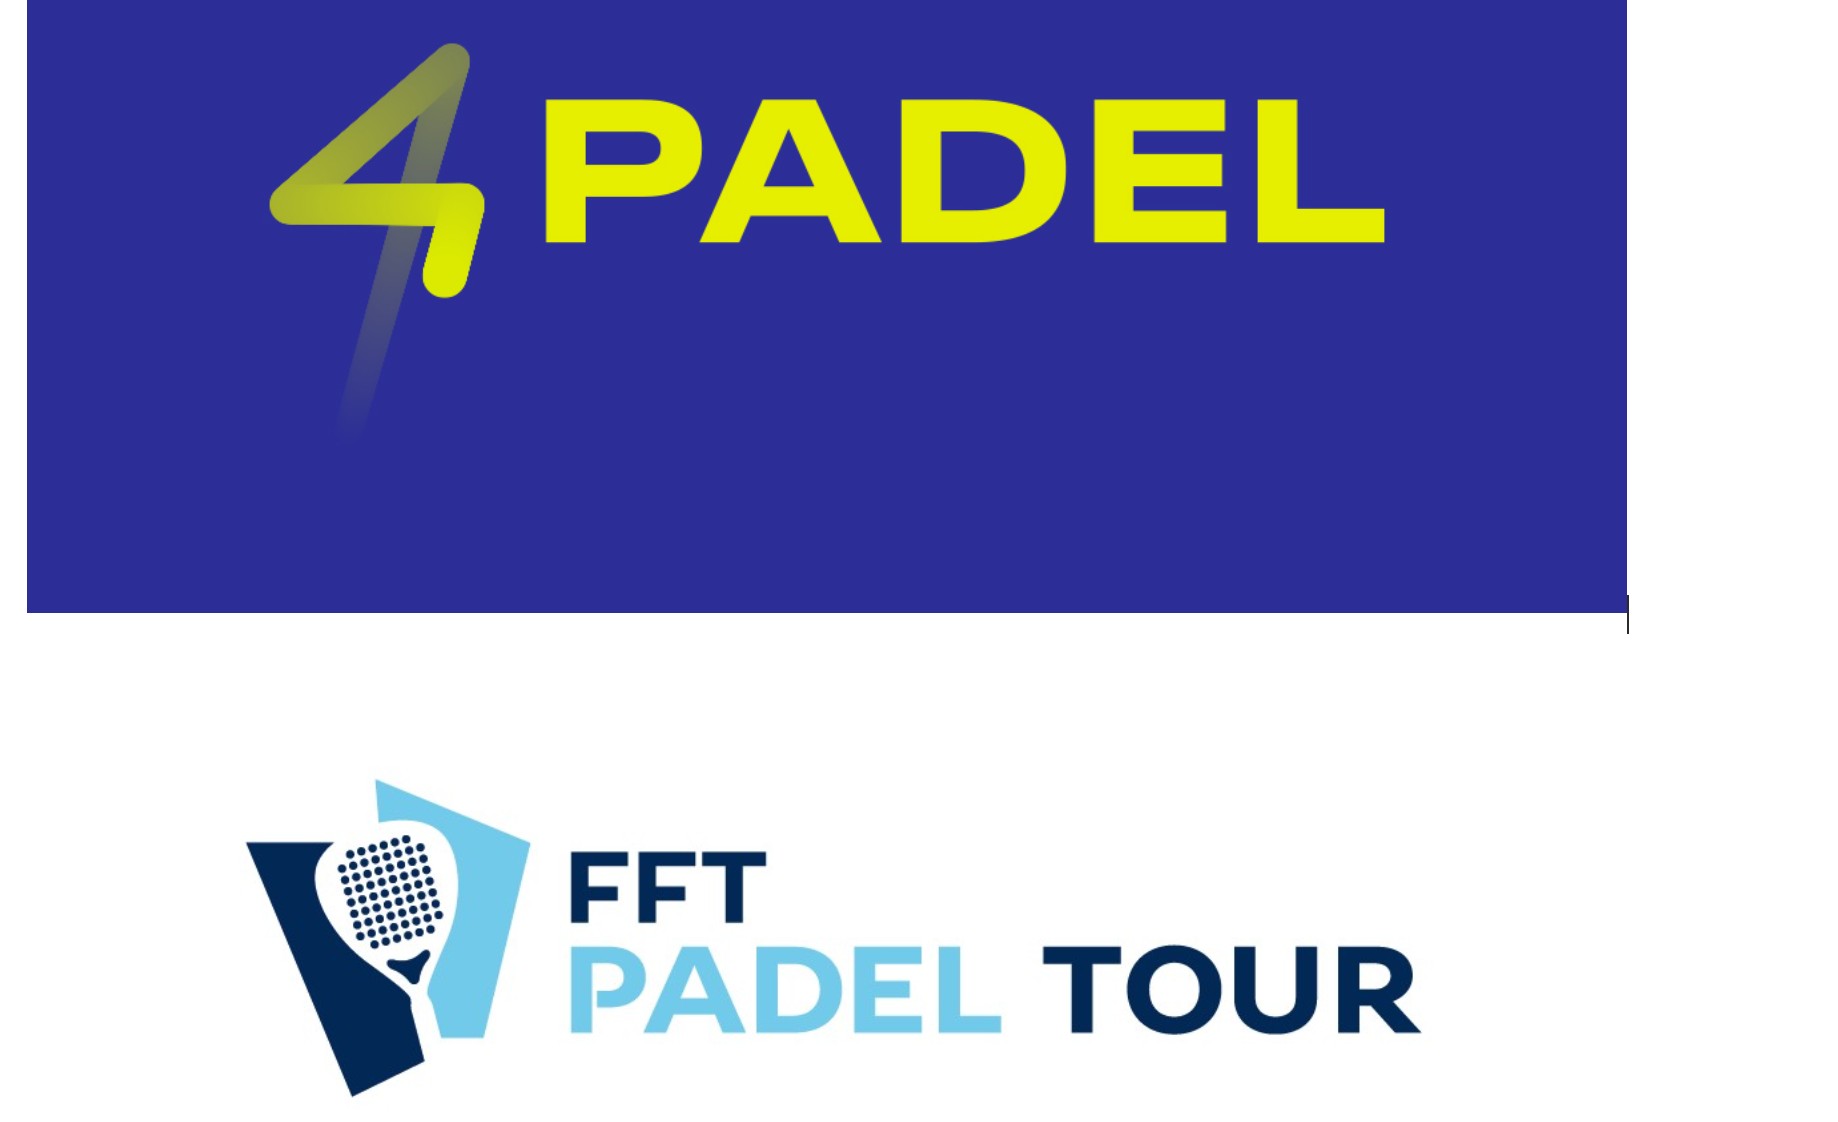 4PADEL versterkt de relatie met de FFT via de PADEL 2019 TOUR